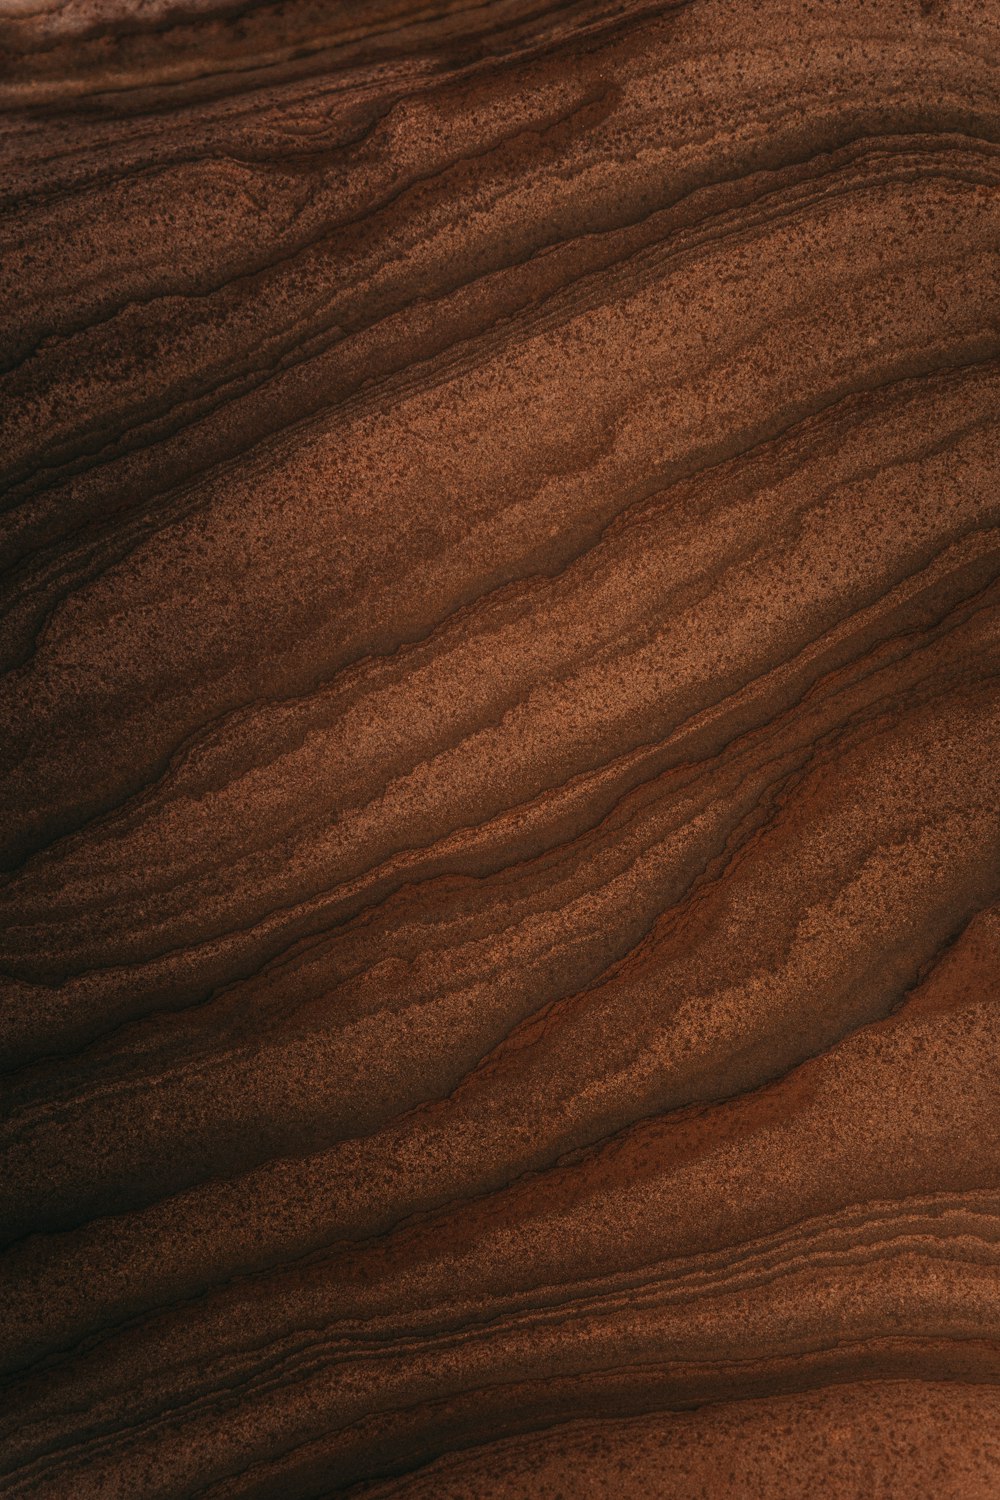 um close up de uma duna de areia marrom